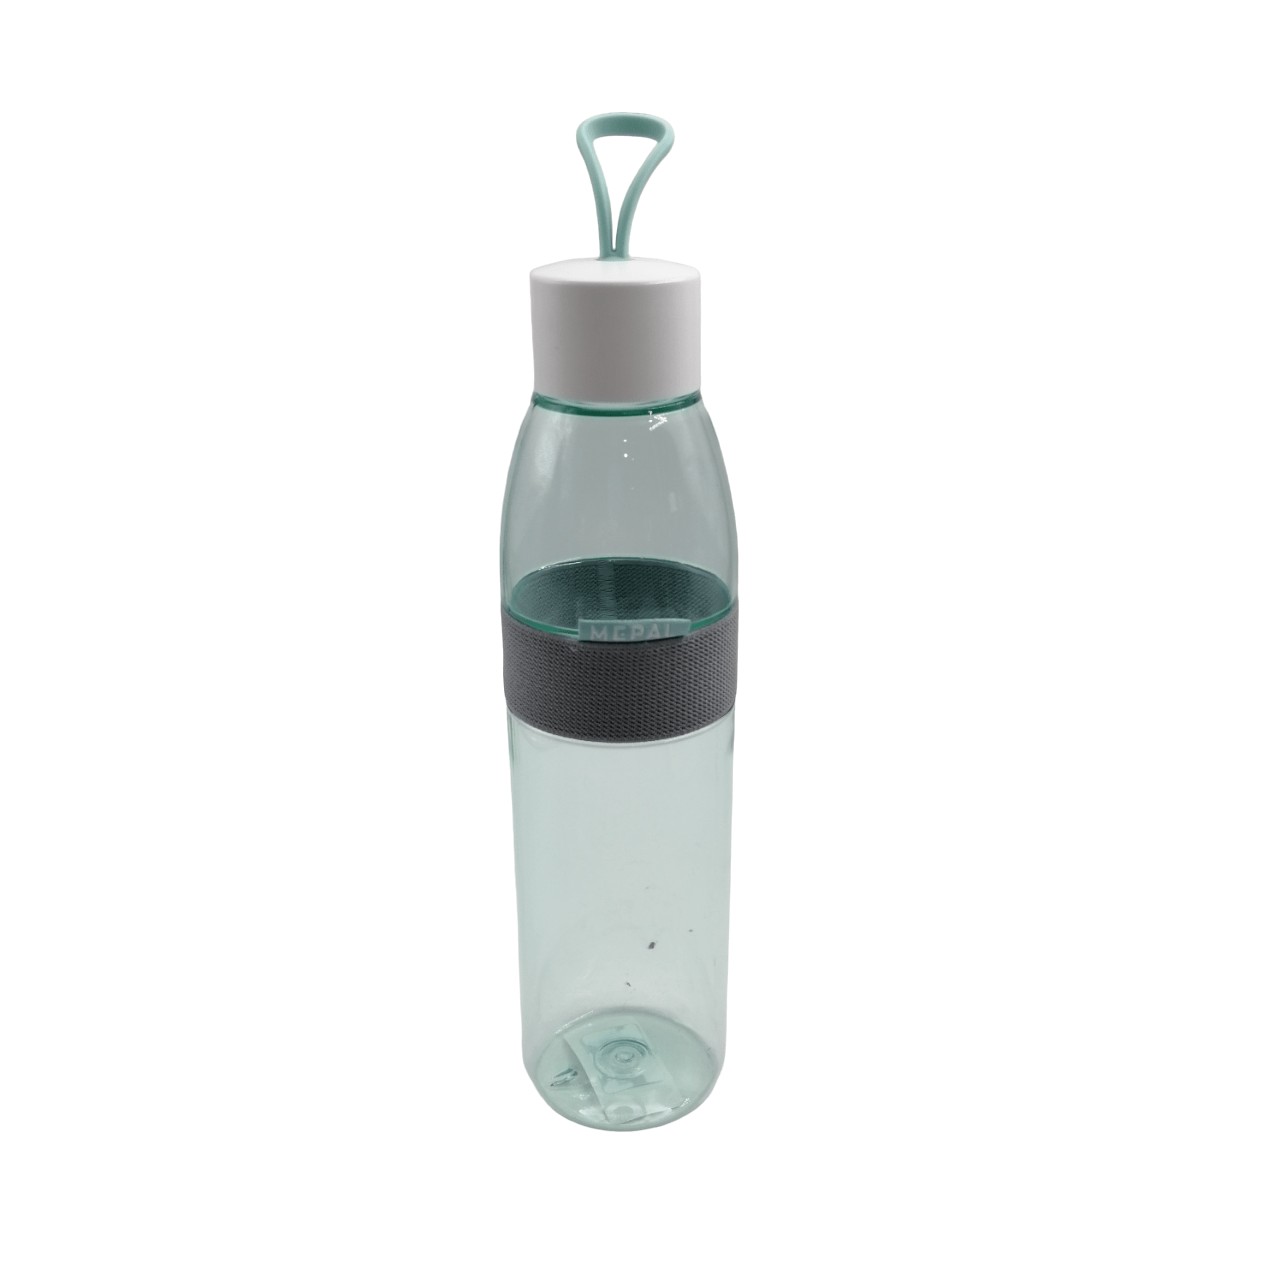 Mepal Ellipse Water Bottle 700mL - Nordic Green